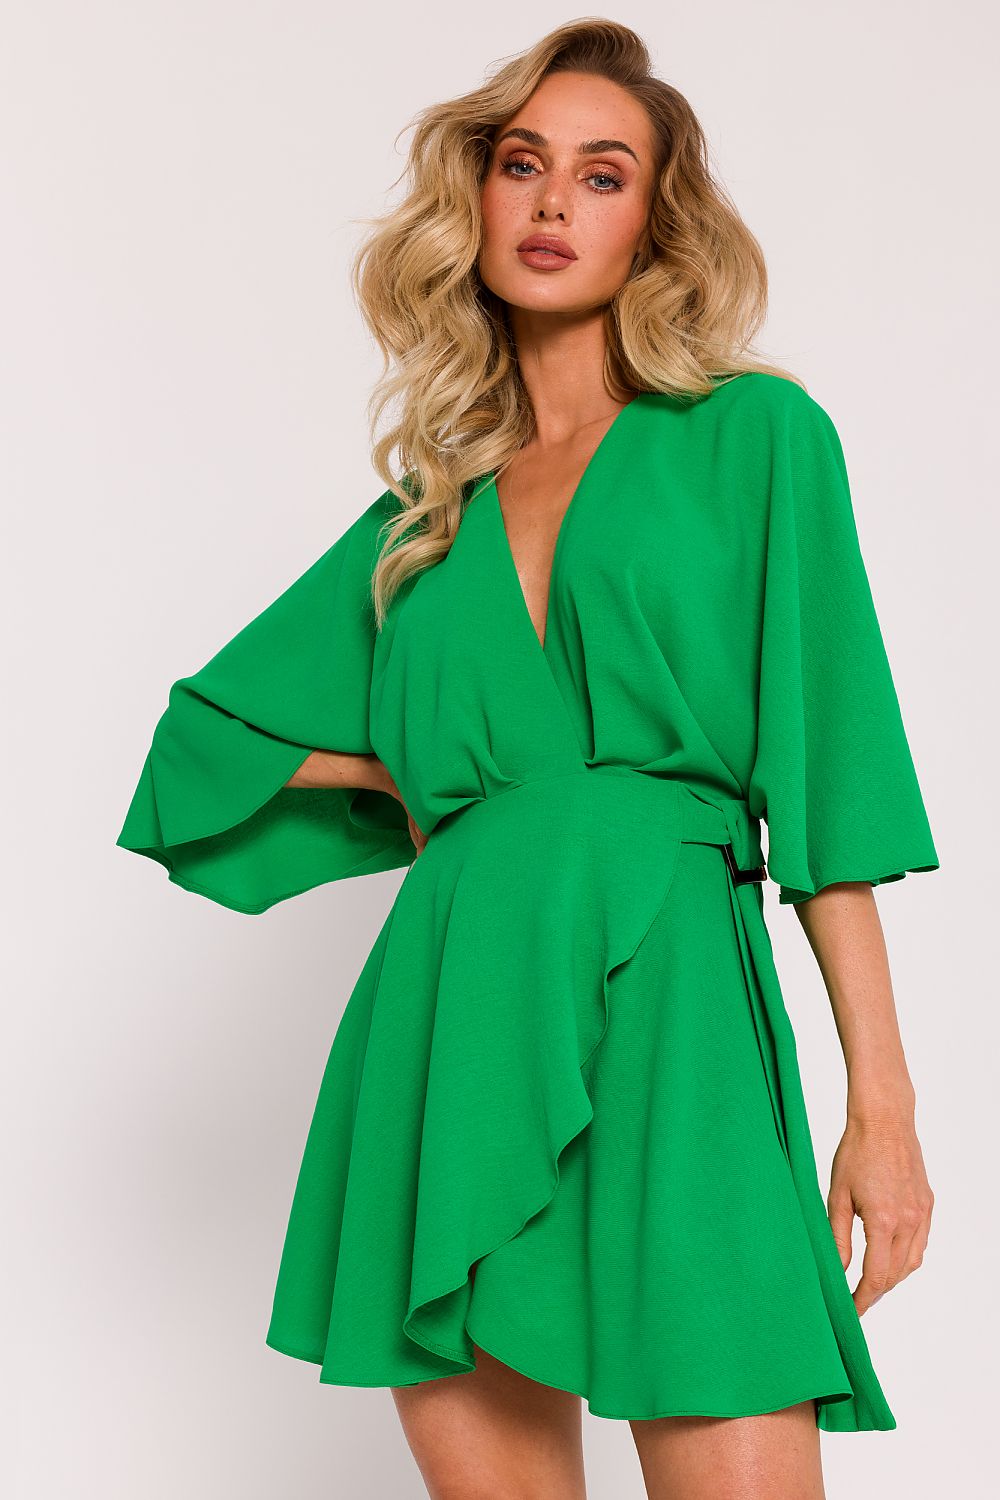 φόρεμα κρεπ με μανίκια νυχτερίδας σε πράσινο